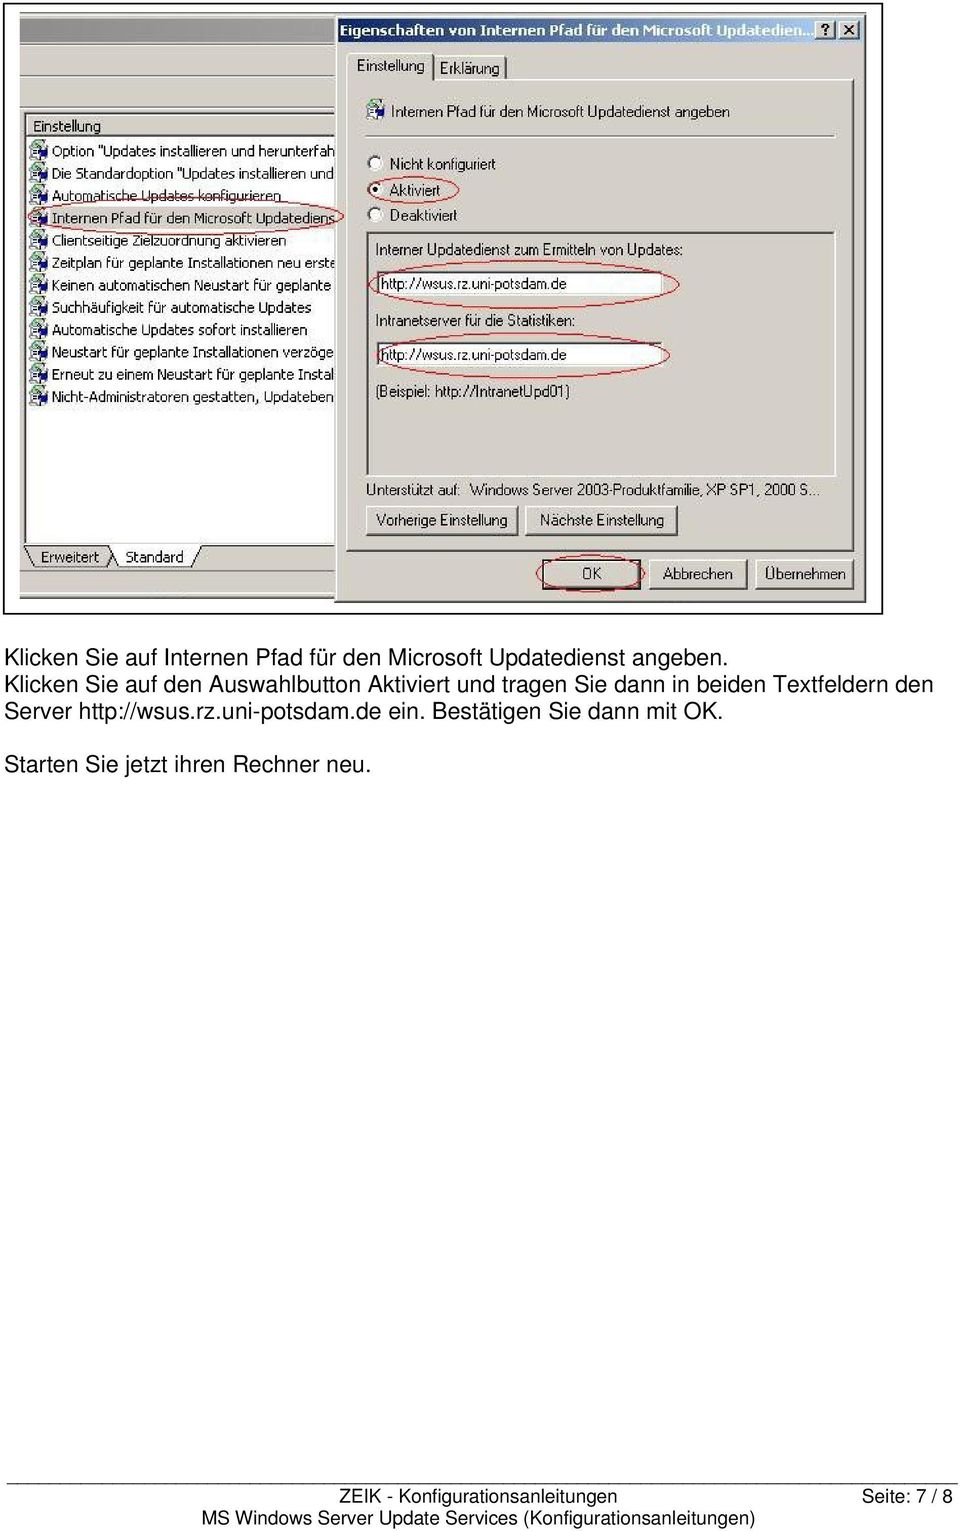 beiden Textfeldern den Server http://wsus.rz.uni-potsdam.de ein.